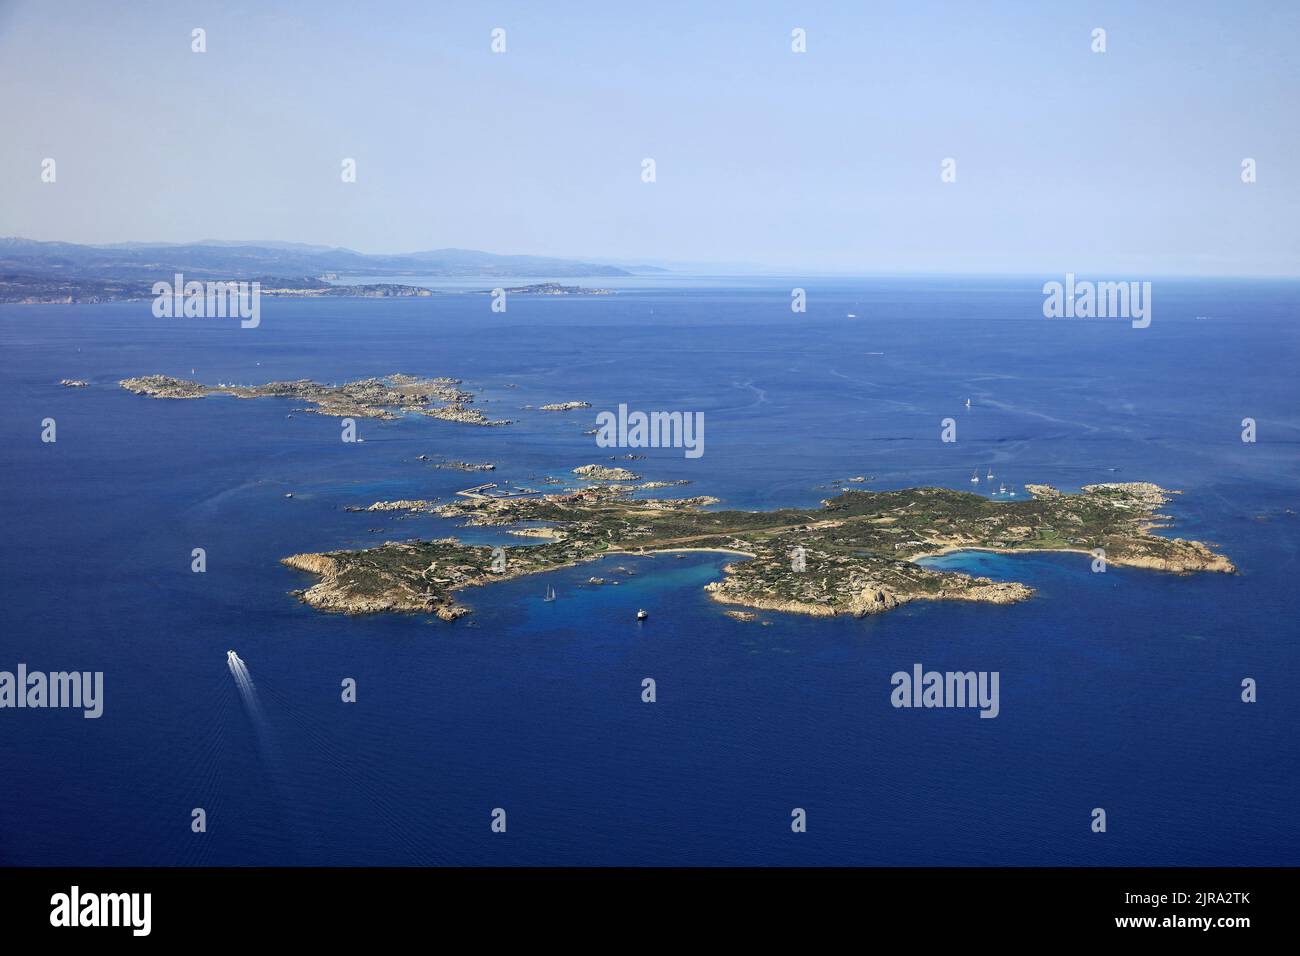 Corse-du-sud, département de la Corse-du-sud : archipel Lavezzi dans le détroit de Bonifacio. Vue aérienne des îles de Lavezzo et Cavallo, avec Banque D'Images